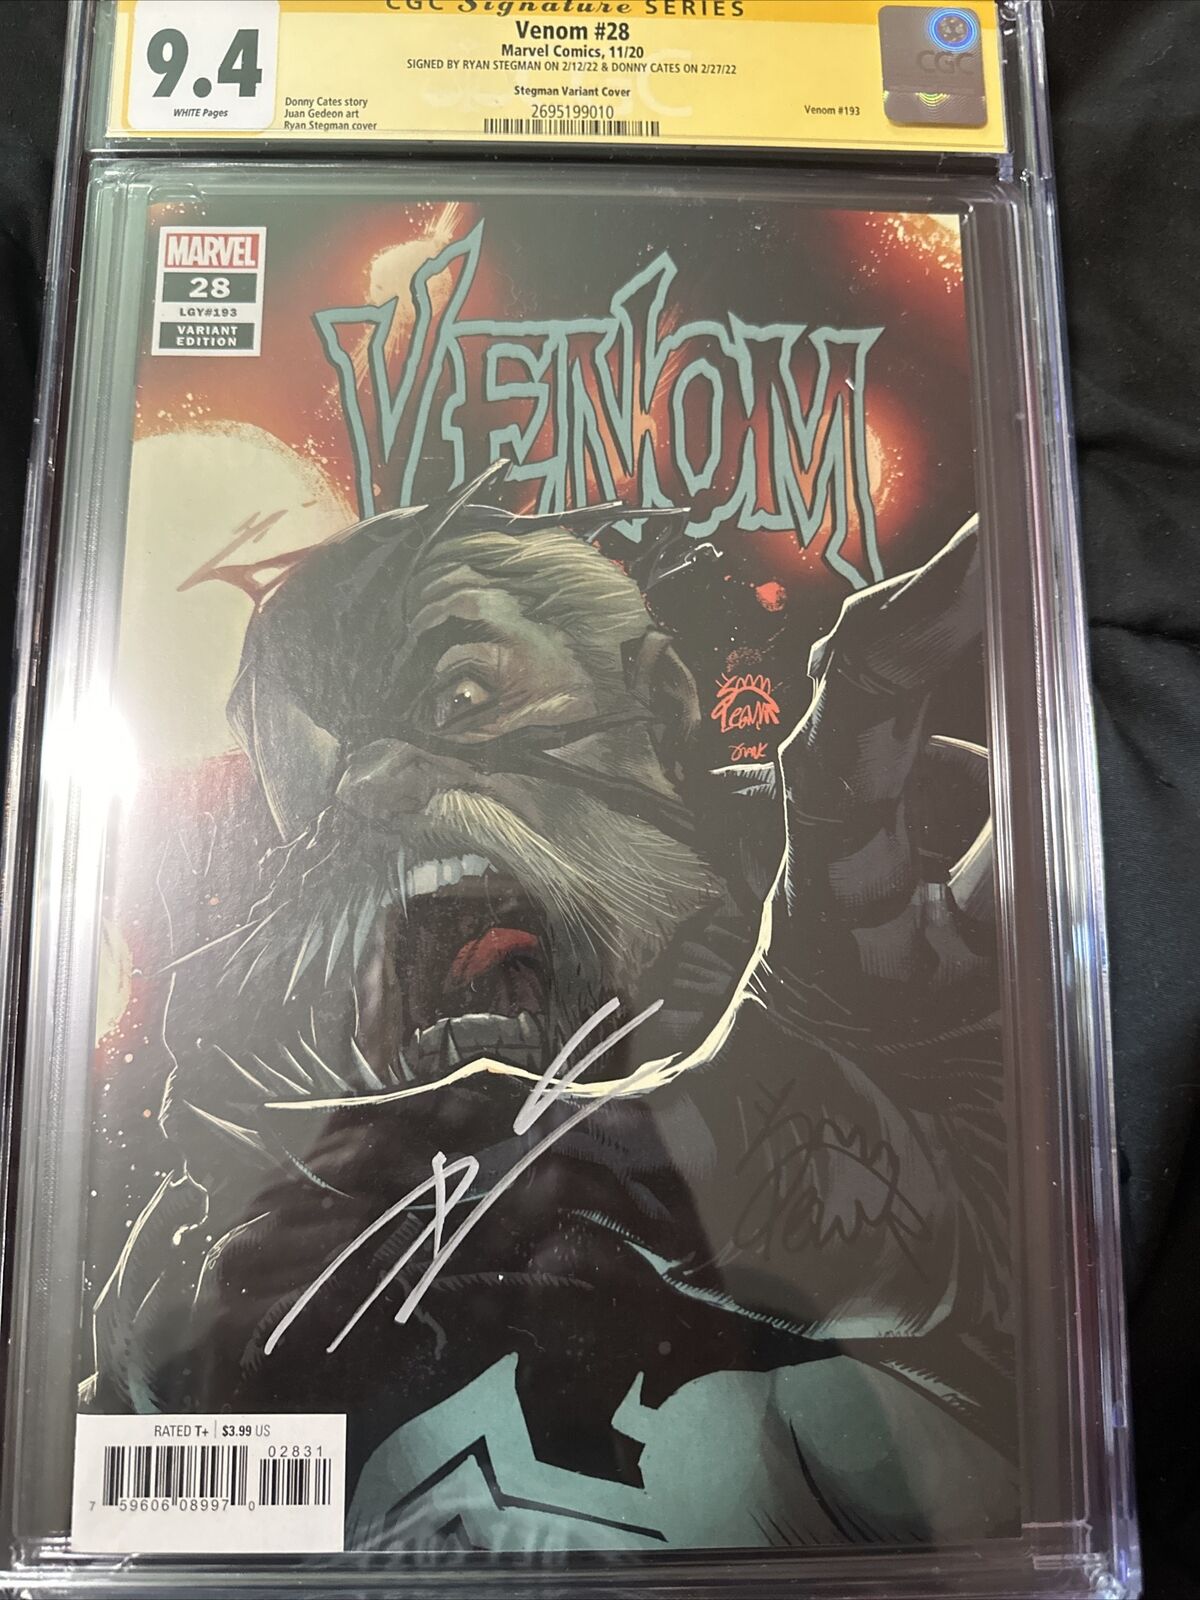 CGC 9.4 Venom #28 Stegman & Cates Signed